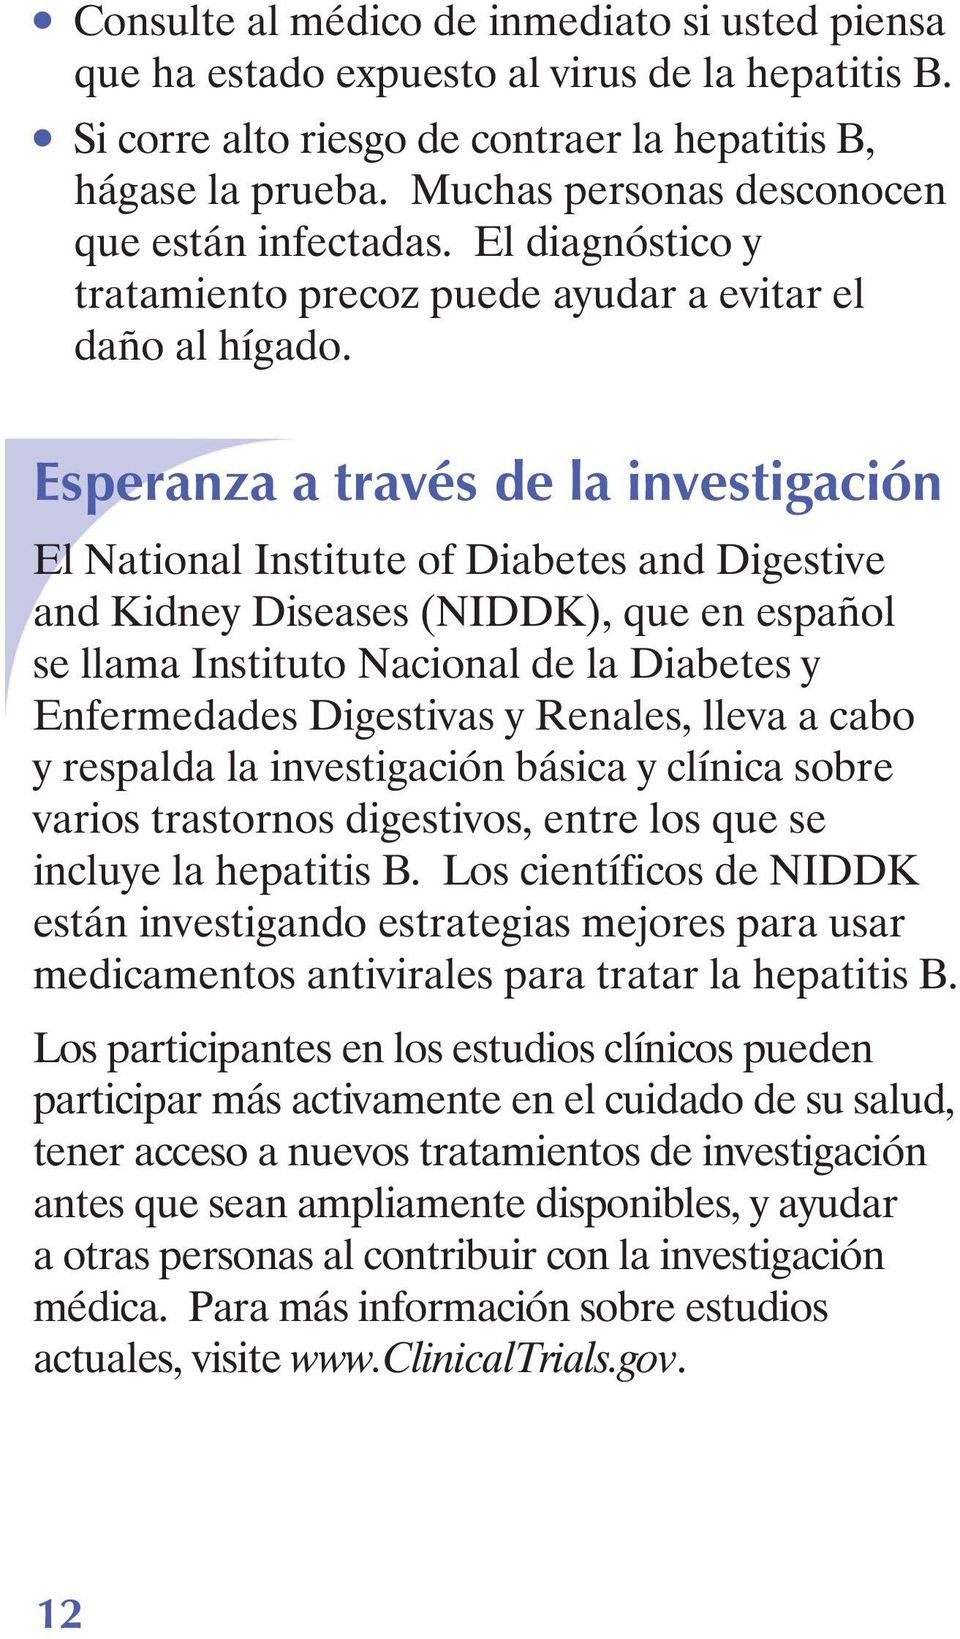 Esperanza a través de la investigación El National Institute of Diabetes and Digestive and Kidney Diseases (NIDDK), que en español se llama Instituto Nacional de la Diabetes y Enfermedades Digestivas